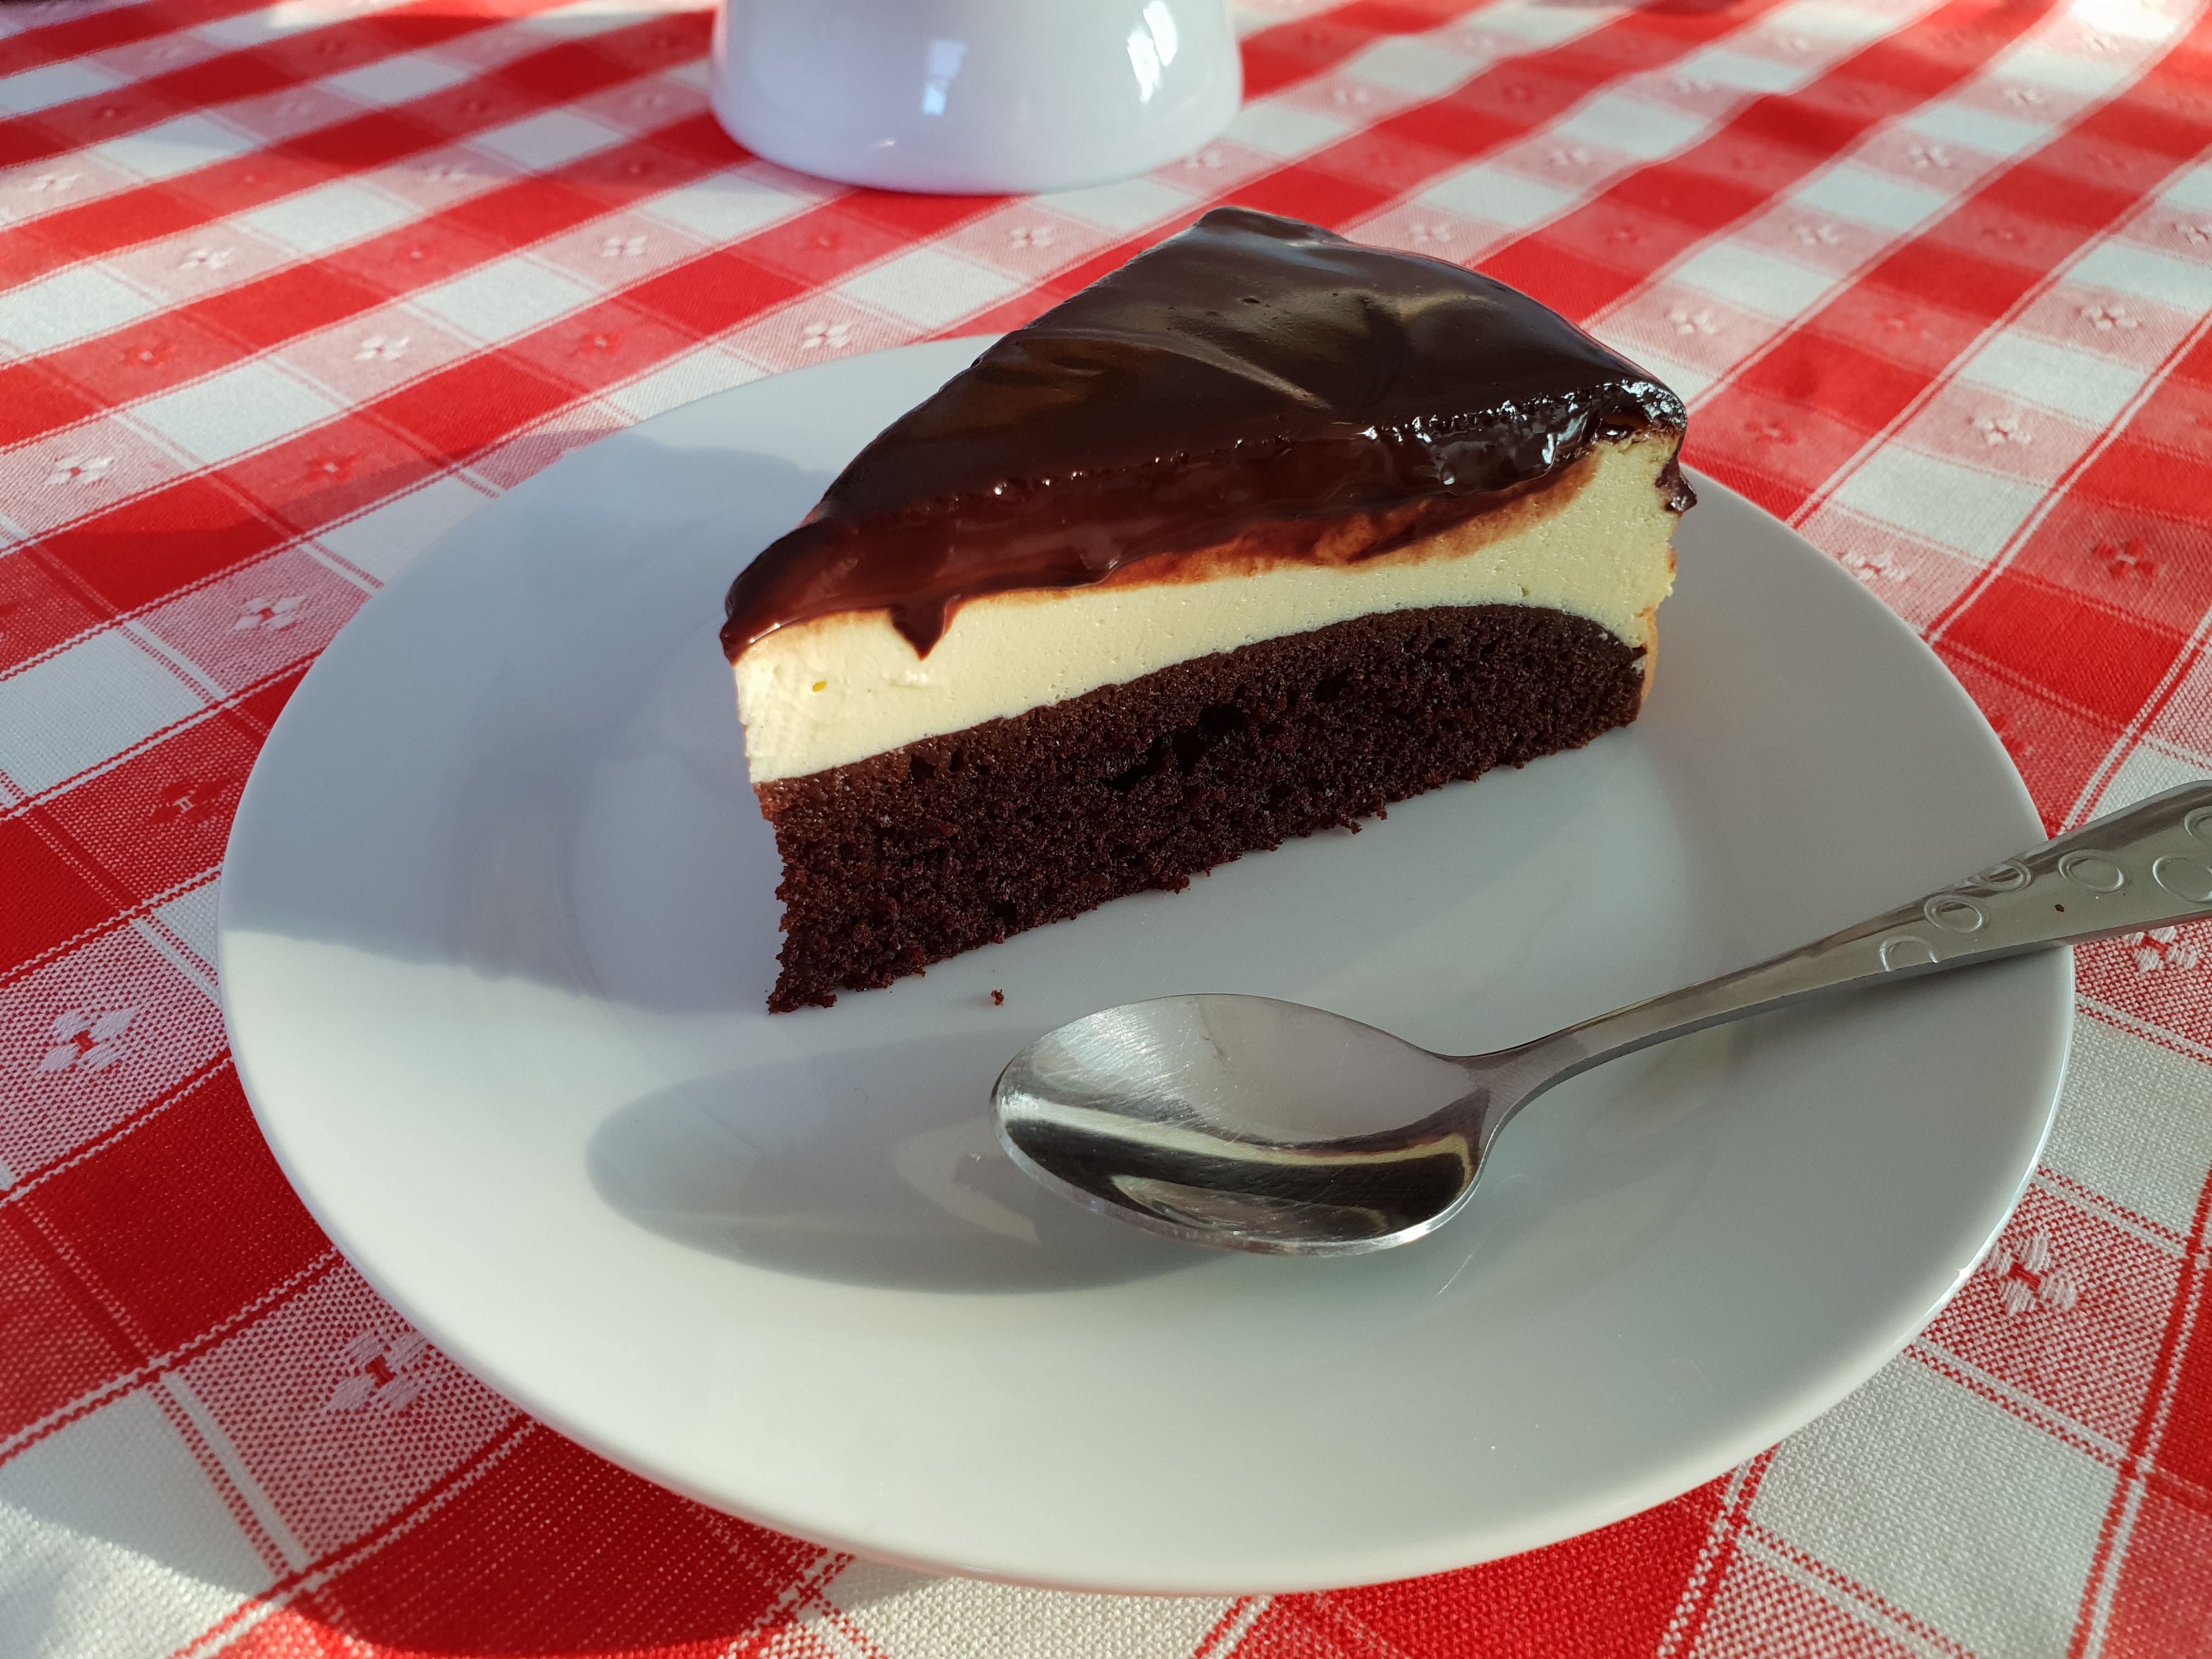 Desert brownie cheesecake